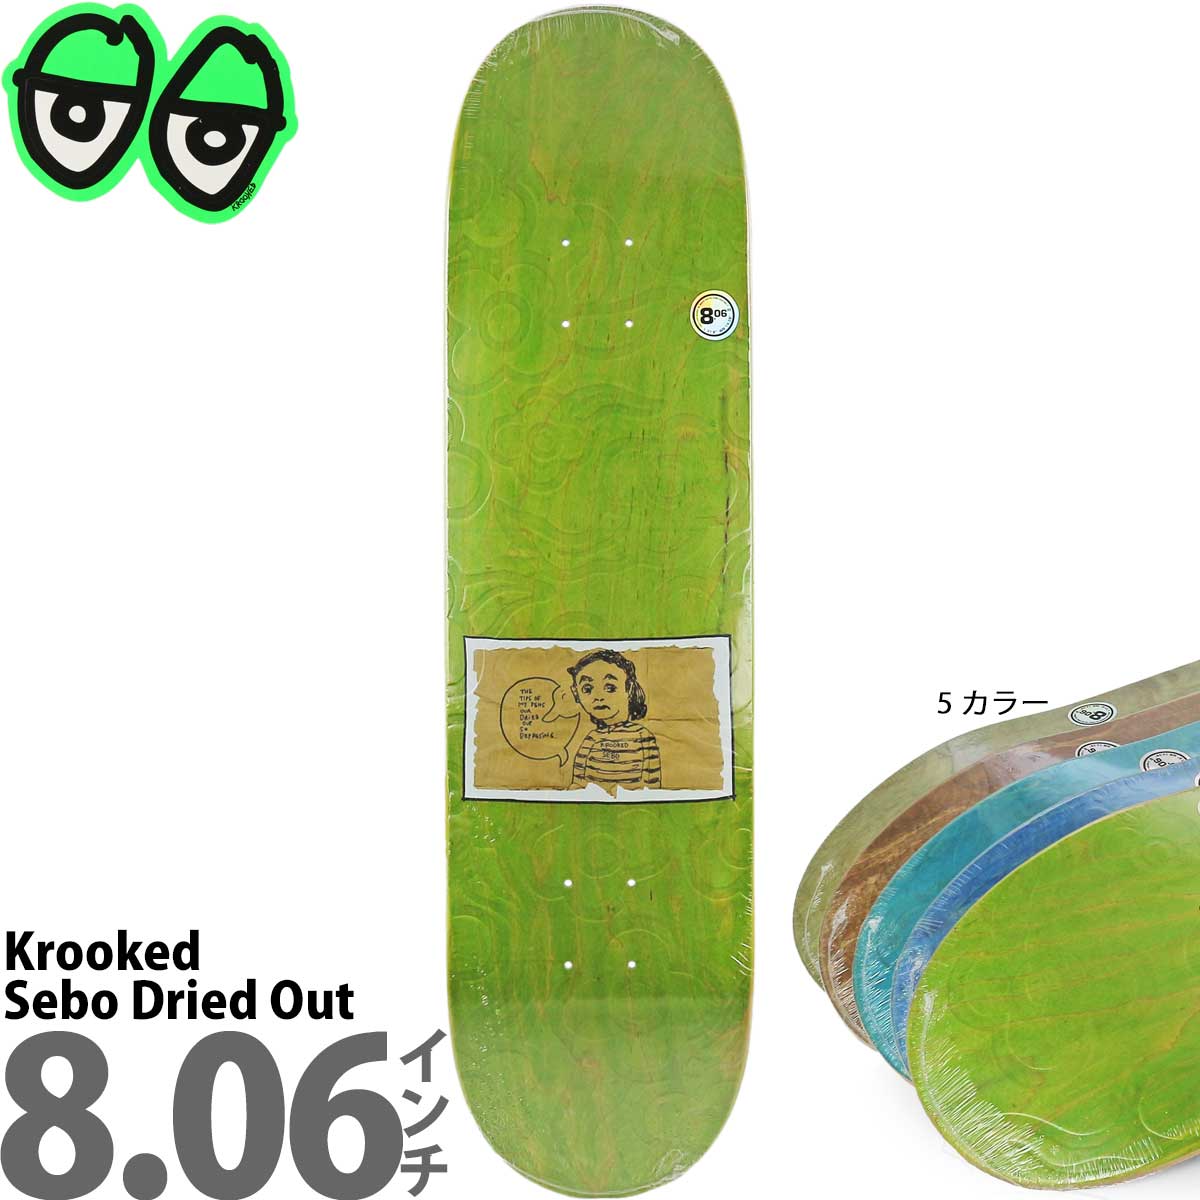 クルキッド 8.06インチ スケボー デッキ Krooked Skateboards Pro Sebo